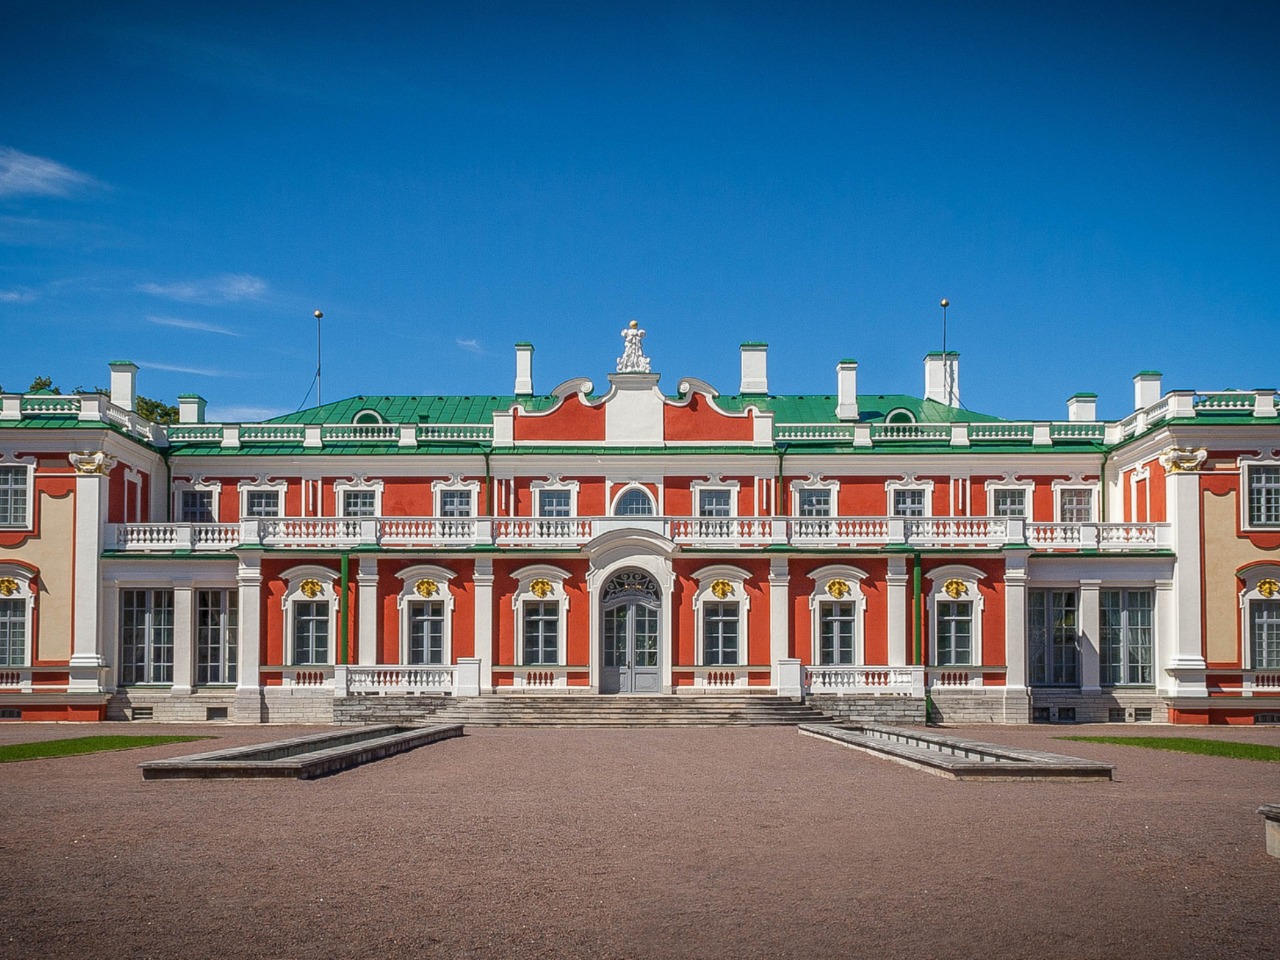 Кадриорг —  музей во дворце | Цена 70€, отзывы, описание экскурсии